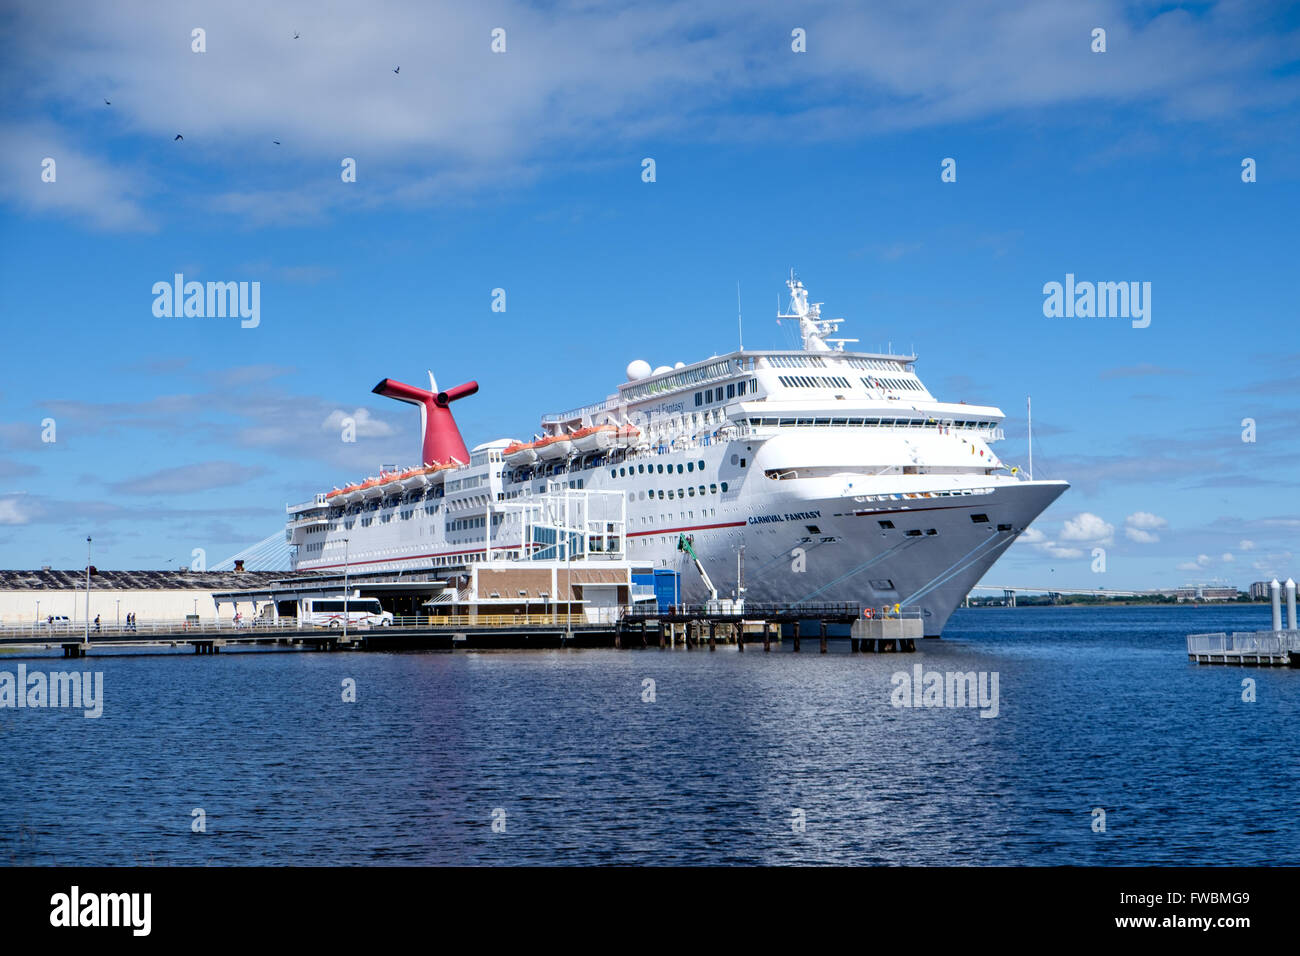 Carnival Fantasy cruise liner moored at Charleston harbor, South Carolina, USA Stock Photo